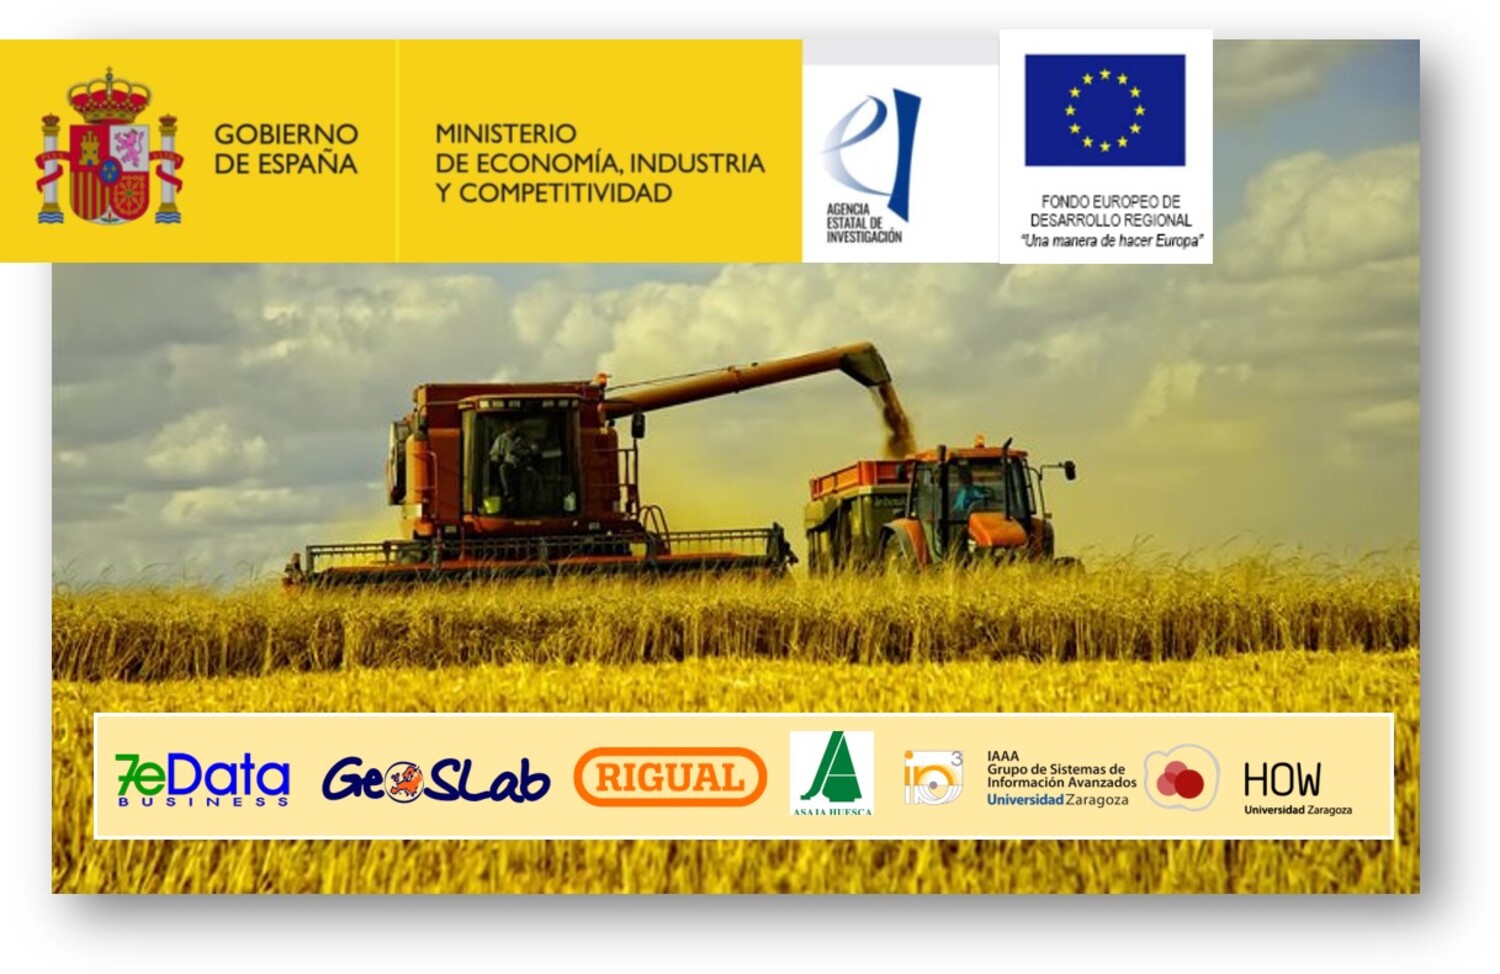 AgroSLab- GO: GRAN PASO EN LA TRANSFERENCIA TECNOLÓGICA AL SECTOR AGRARIO